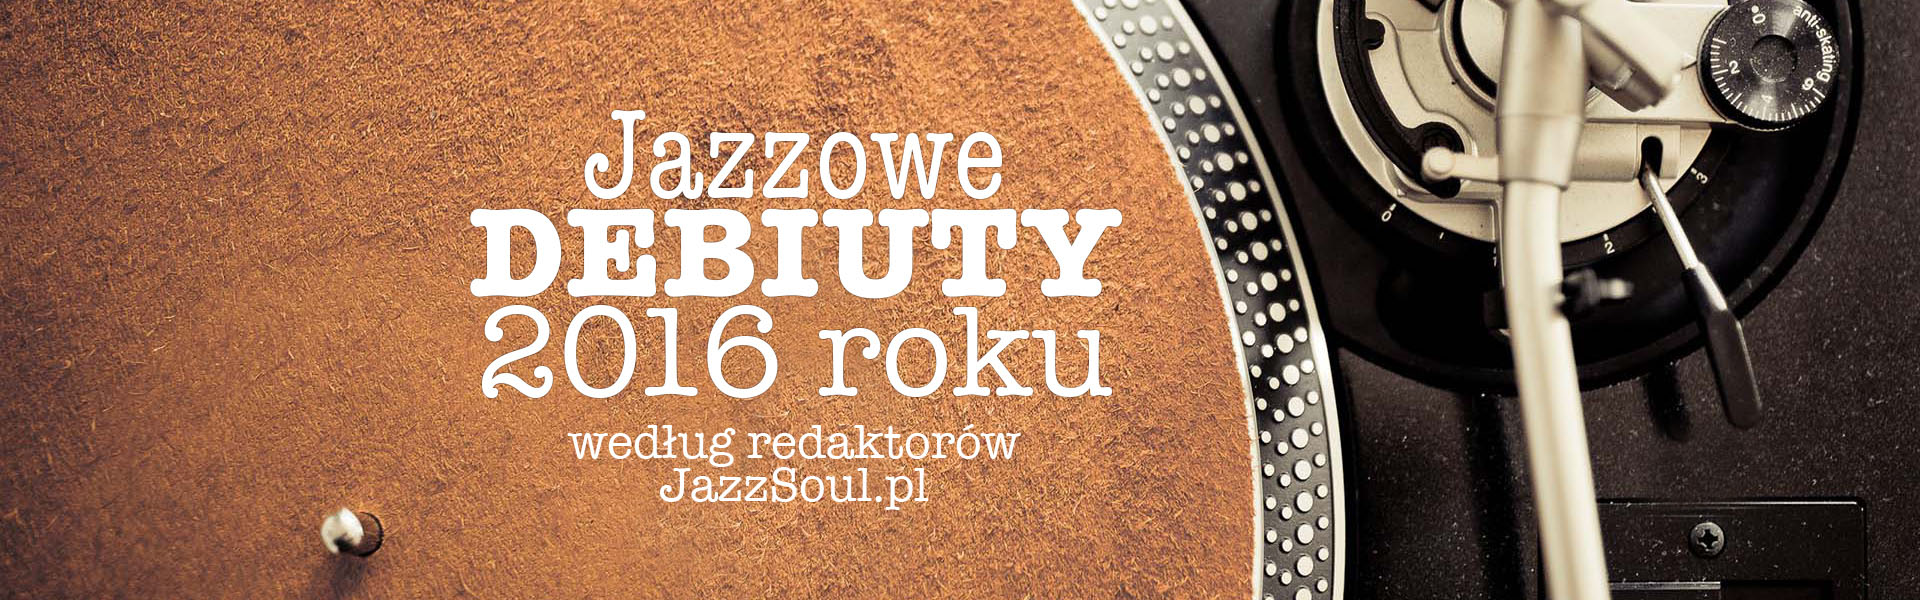 debiuty-jazz-podsumowanie-2016